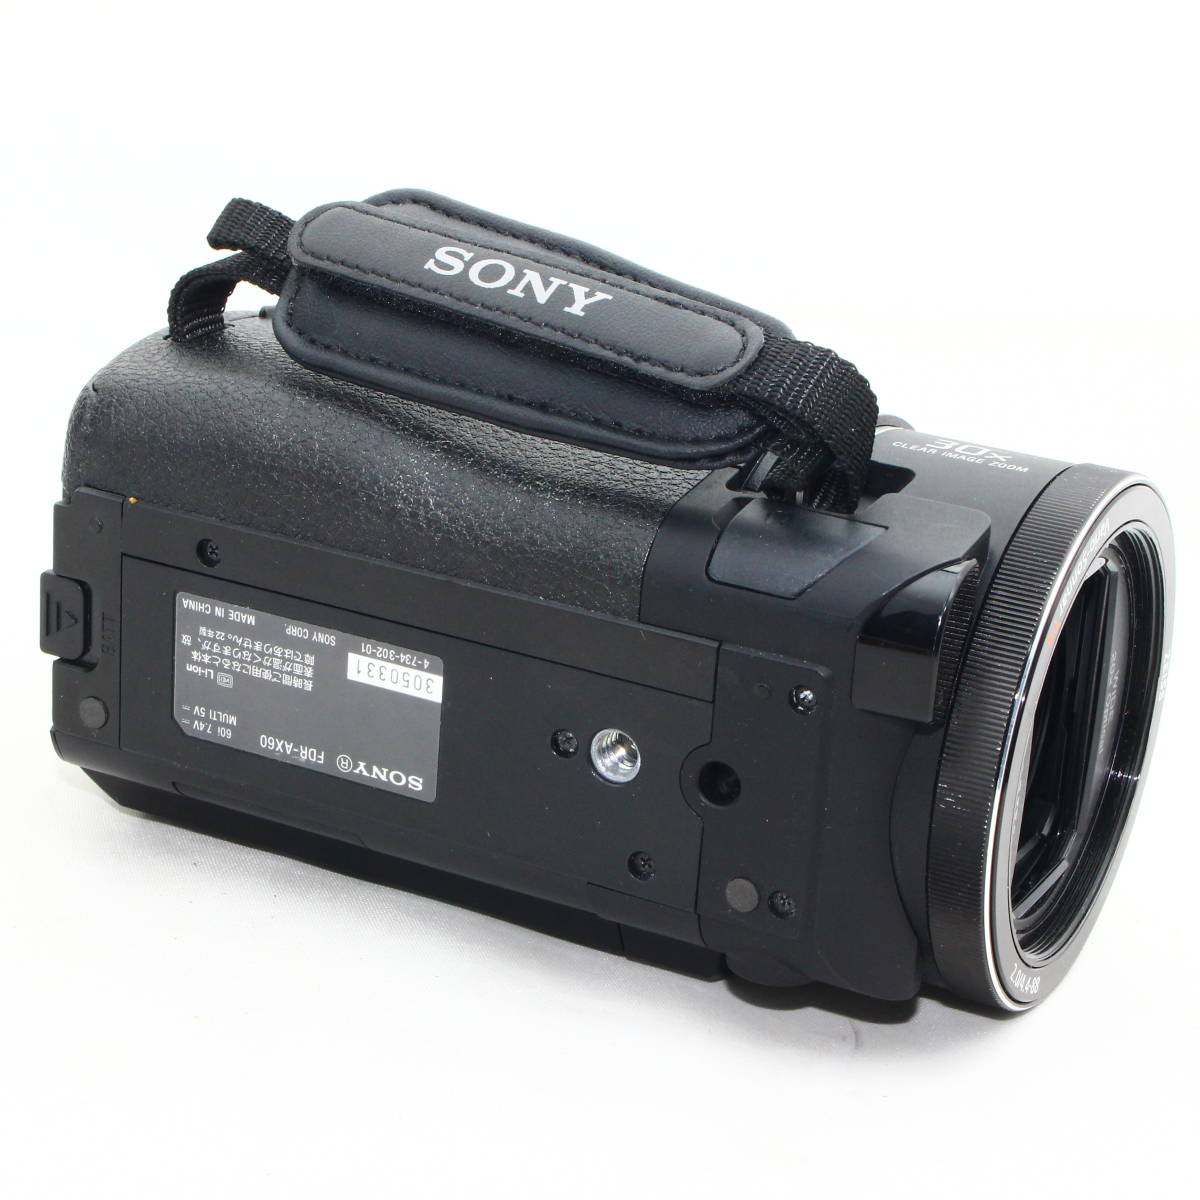 ソニー 4K ビデオカメラ Handycam FDR-AX60 ブラック 内蔵メモリー64G FDR-AX60 B ジャンク品 #2401018_画像4